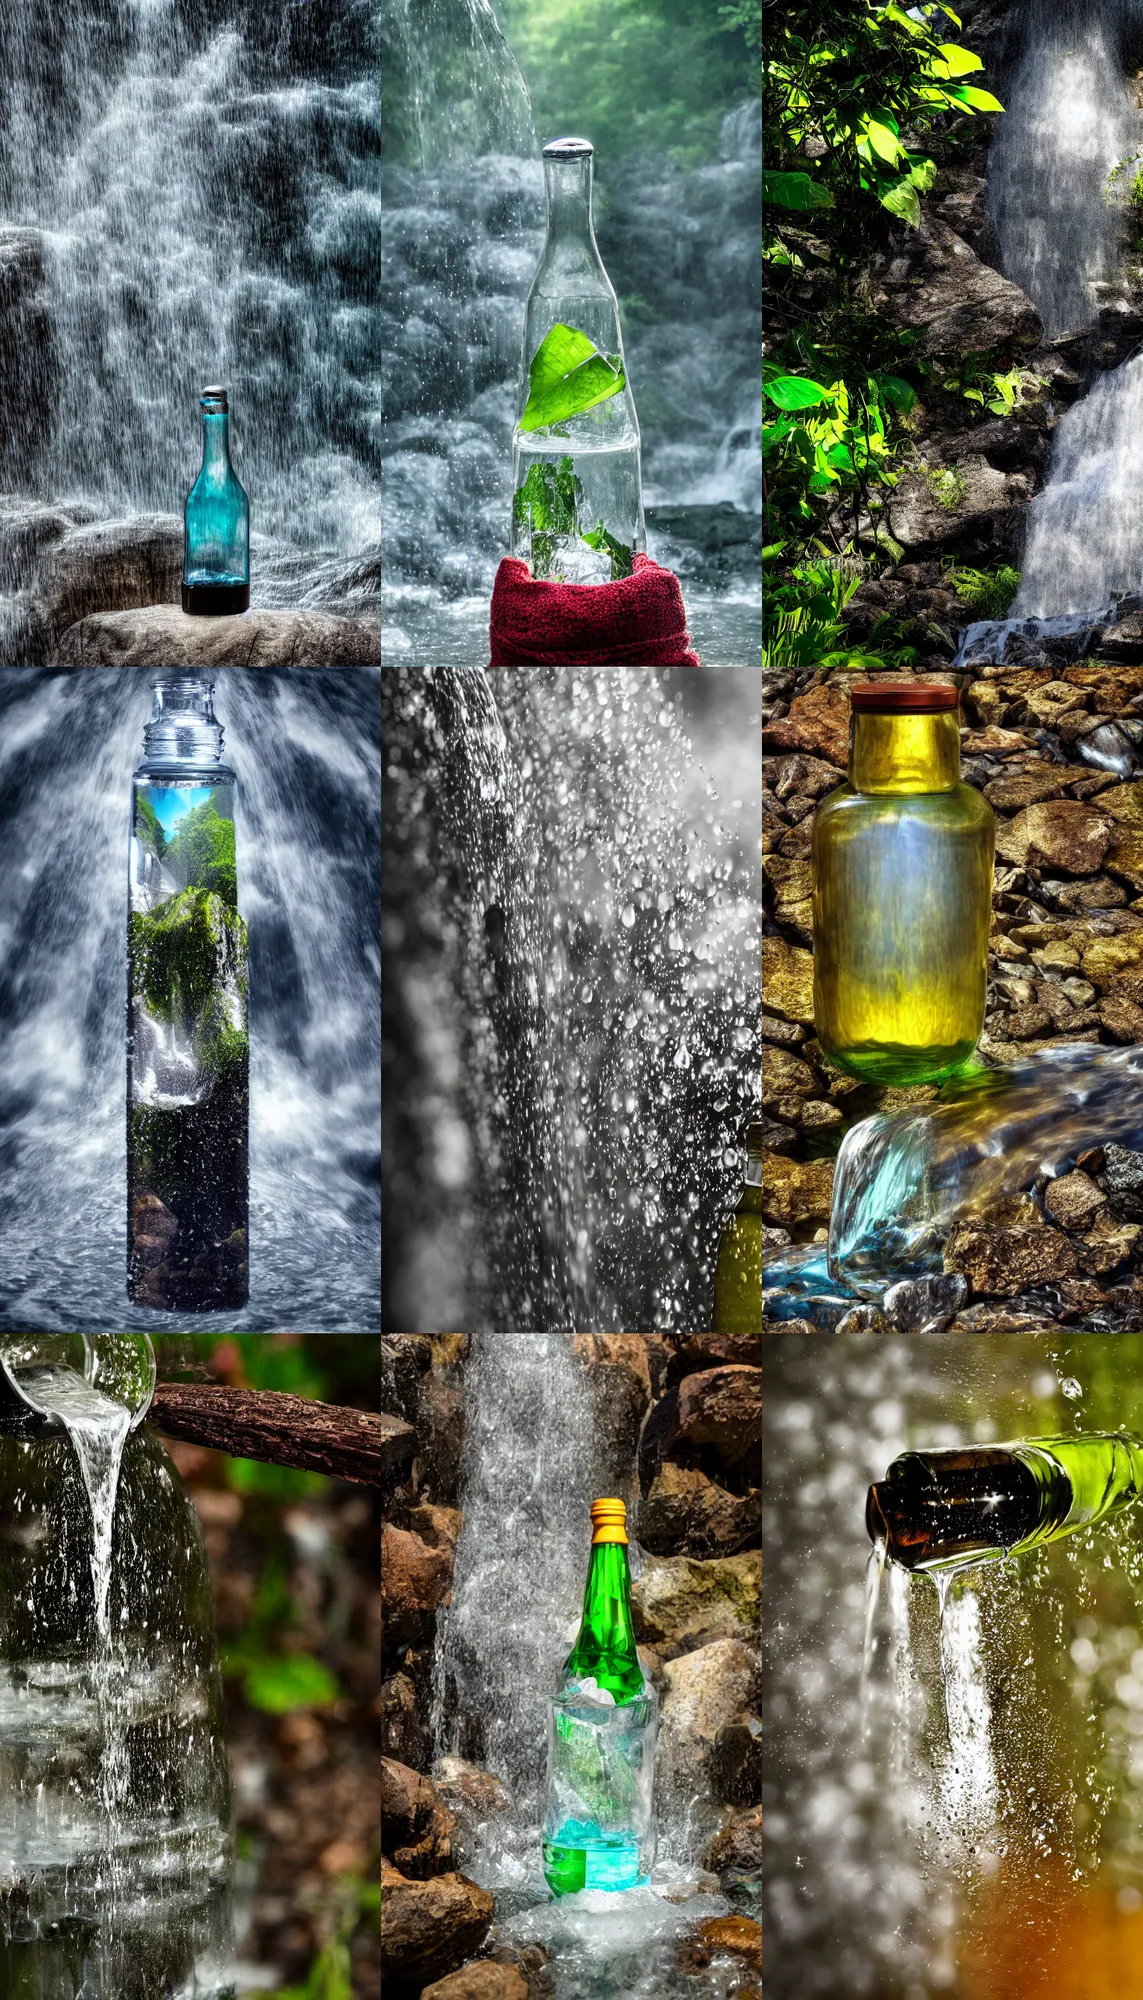 Prompt: A waterfall inside a bottle, fanatsy, 8k, high resolution